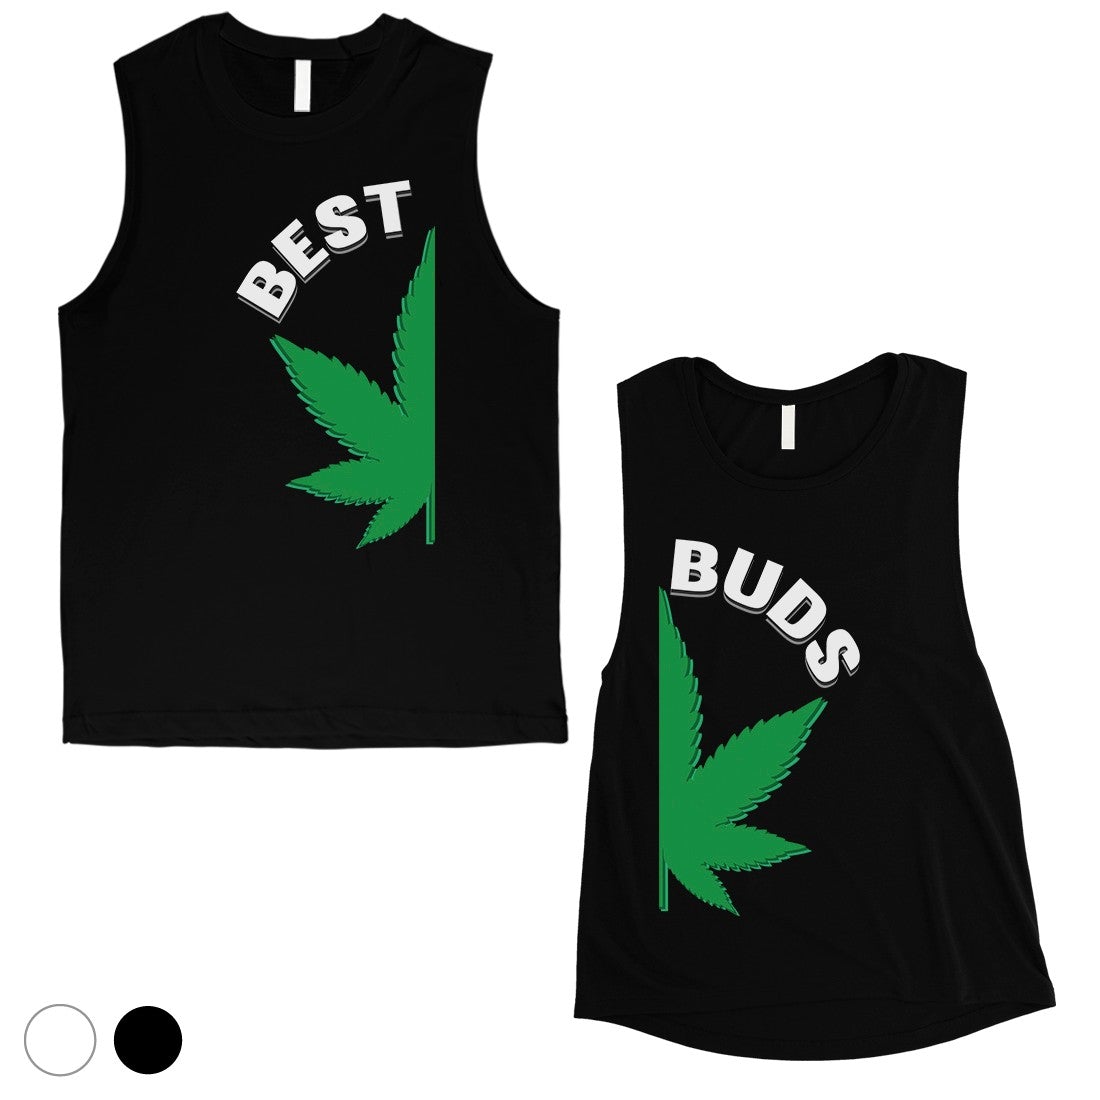 Best Buds Marijuana Matching Muscle Tank Tops Gag Anniversary Gift Black